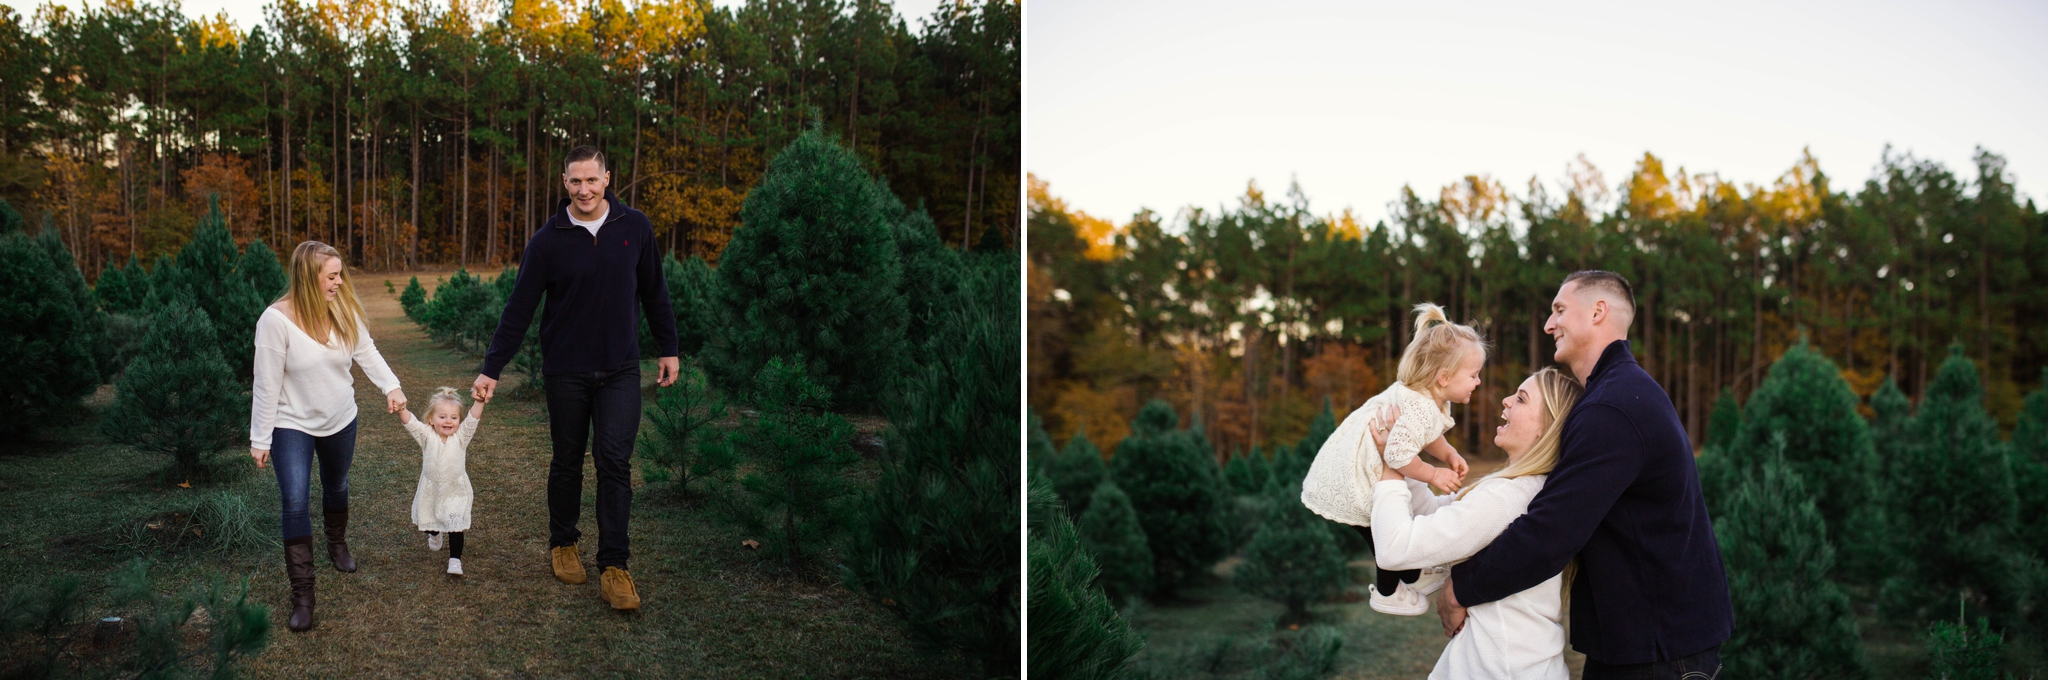 Fayetteville North Carolina Family Photographer at the Christmas Tree Farm - Johanna Dye Photography